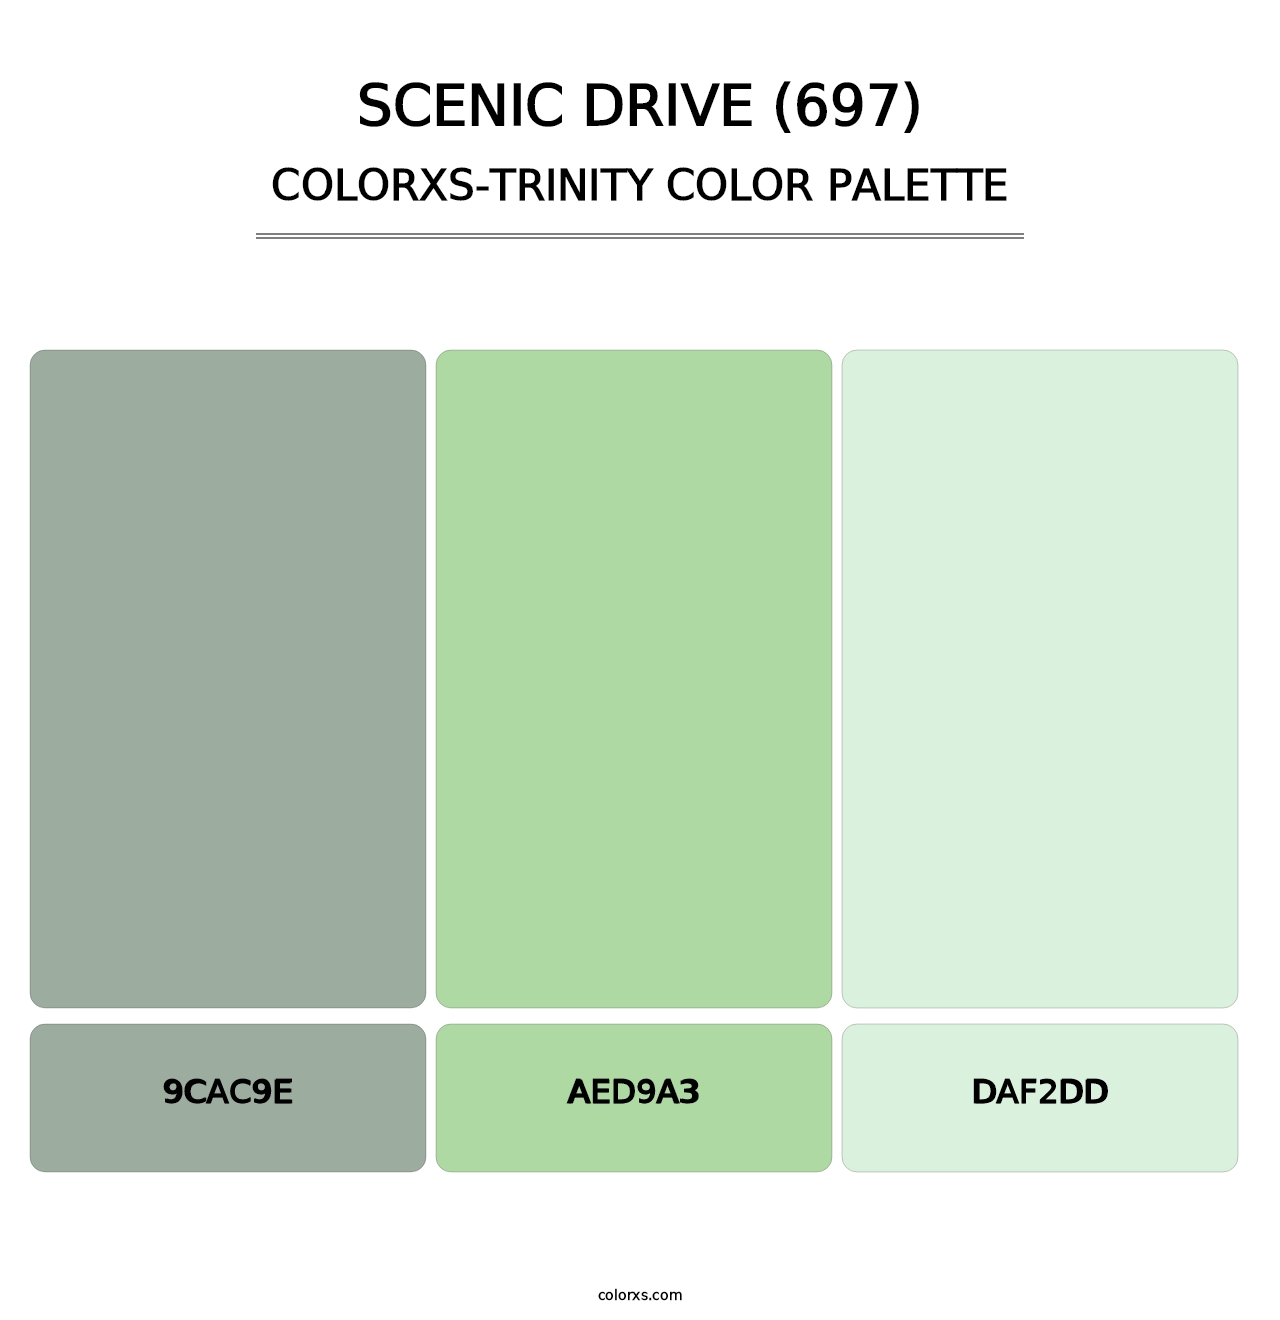 Scenic Drive (697) - Colorxs Trinity Palette